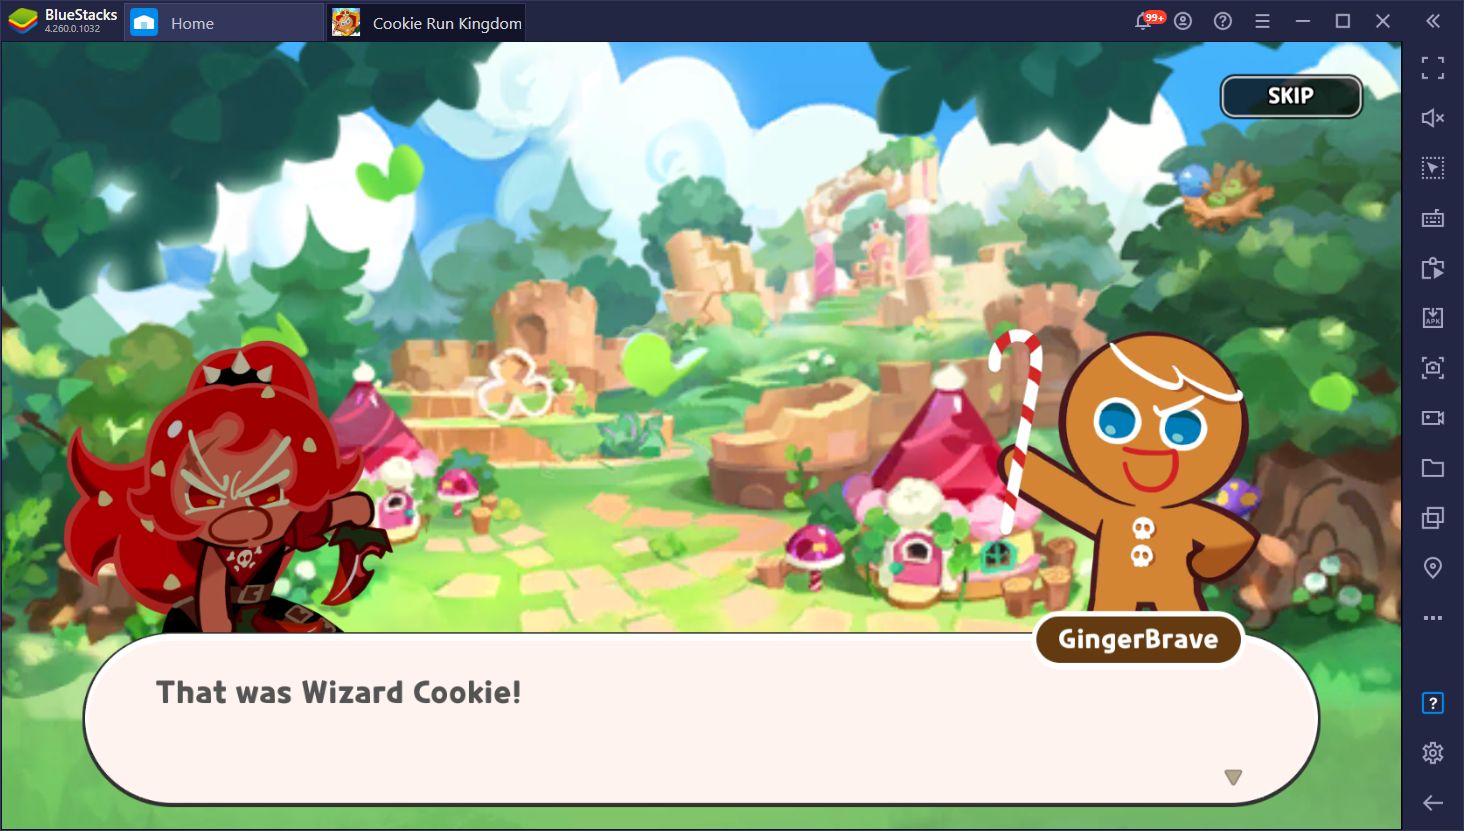 Cookie Run: Kingdom auf dem PC - So spielst du dieses neue Handyspiel auf dem Computer mit BlueStacks